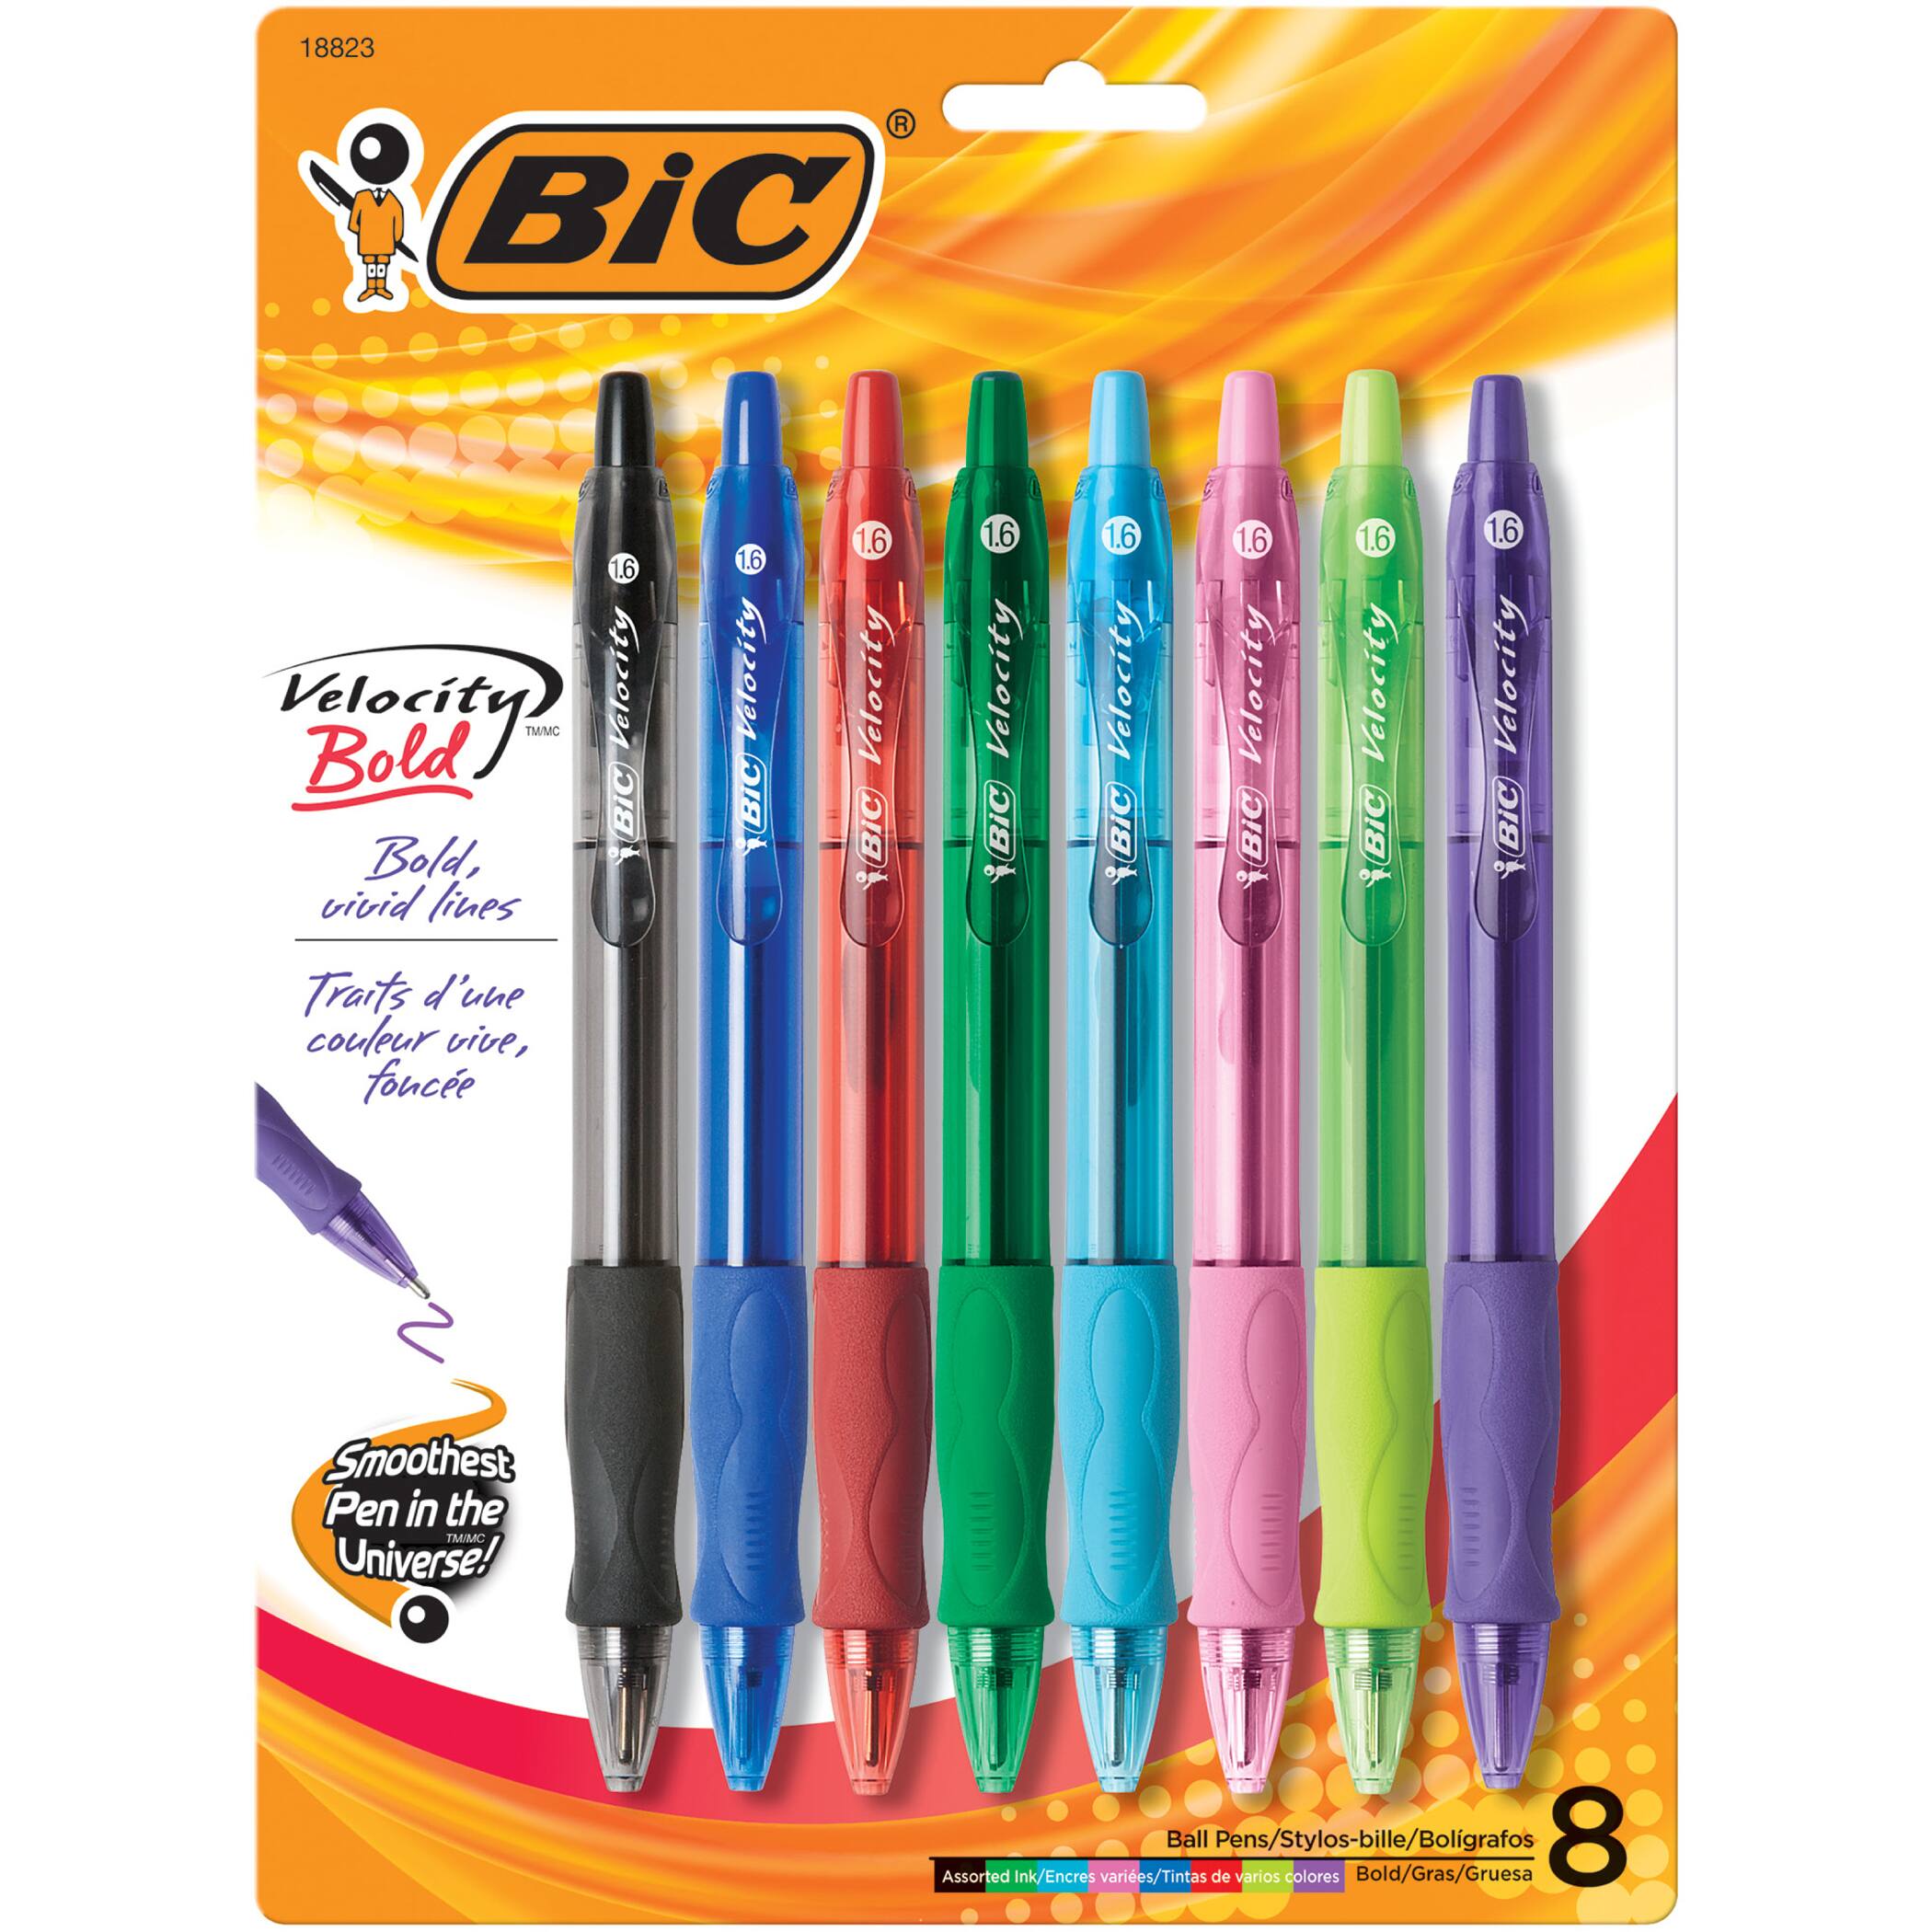 BiC&#xAE; Velocity&#xAE; Bold Fashion Retractable Ball Pens, 3 Packs